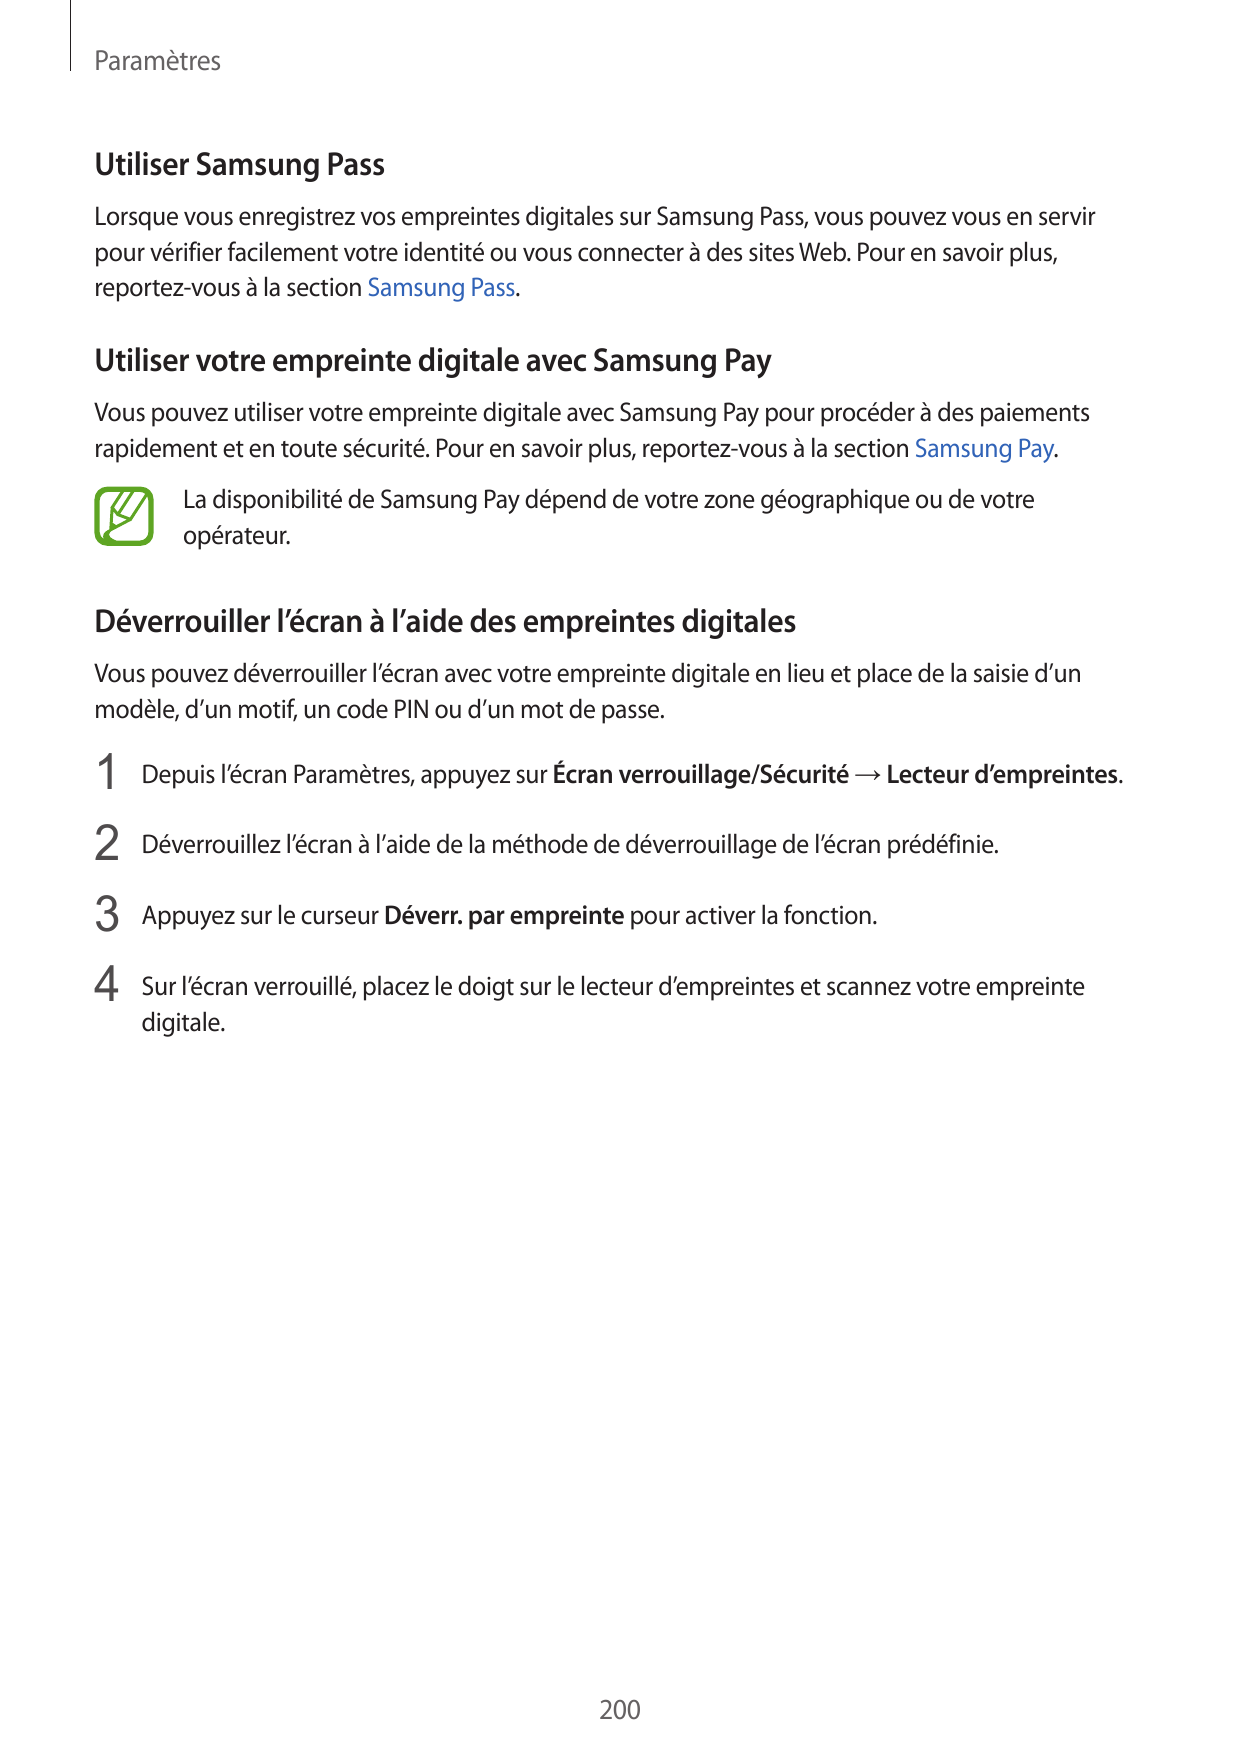 ParamètresUtiliser Samsung PassLorsque vous enregistrez vos empreintes digitales sur Samsung Pass, vous pouvez vous en servirpou